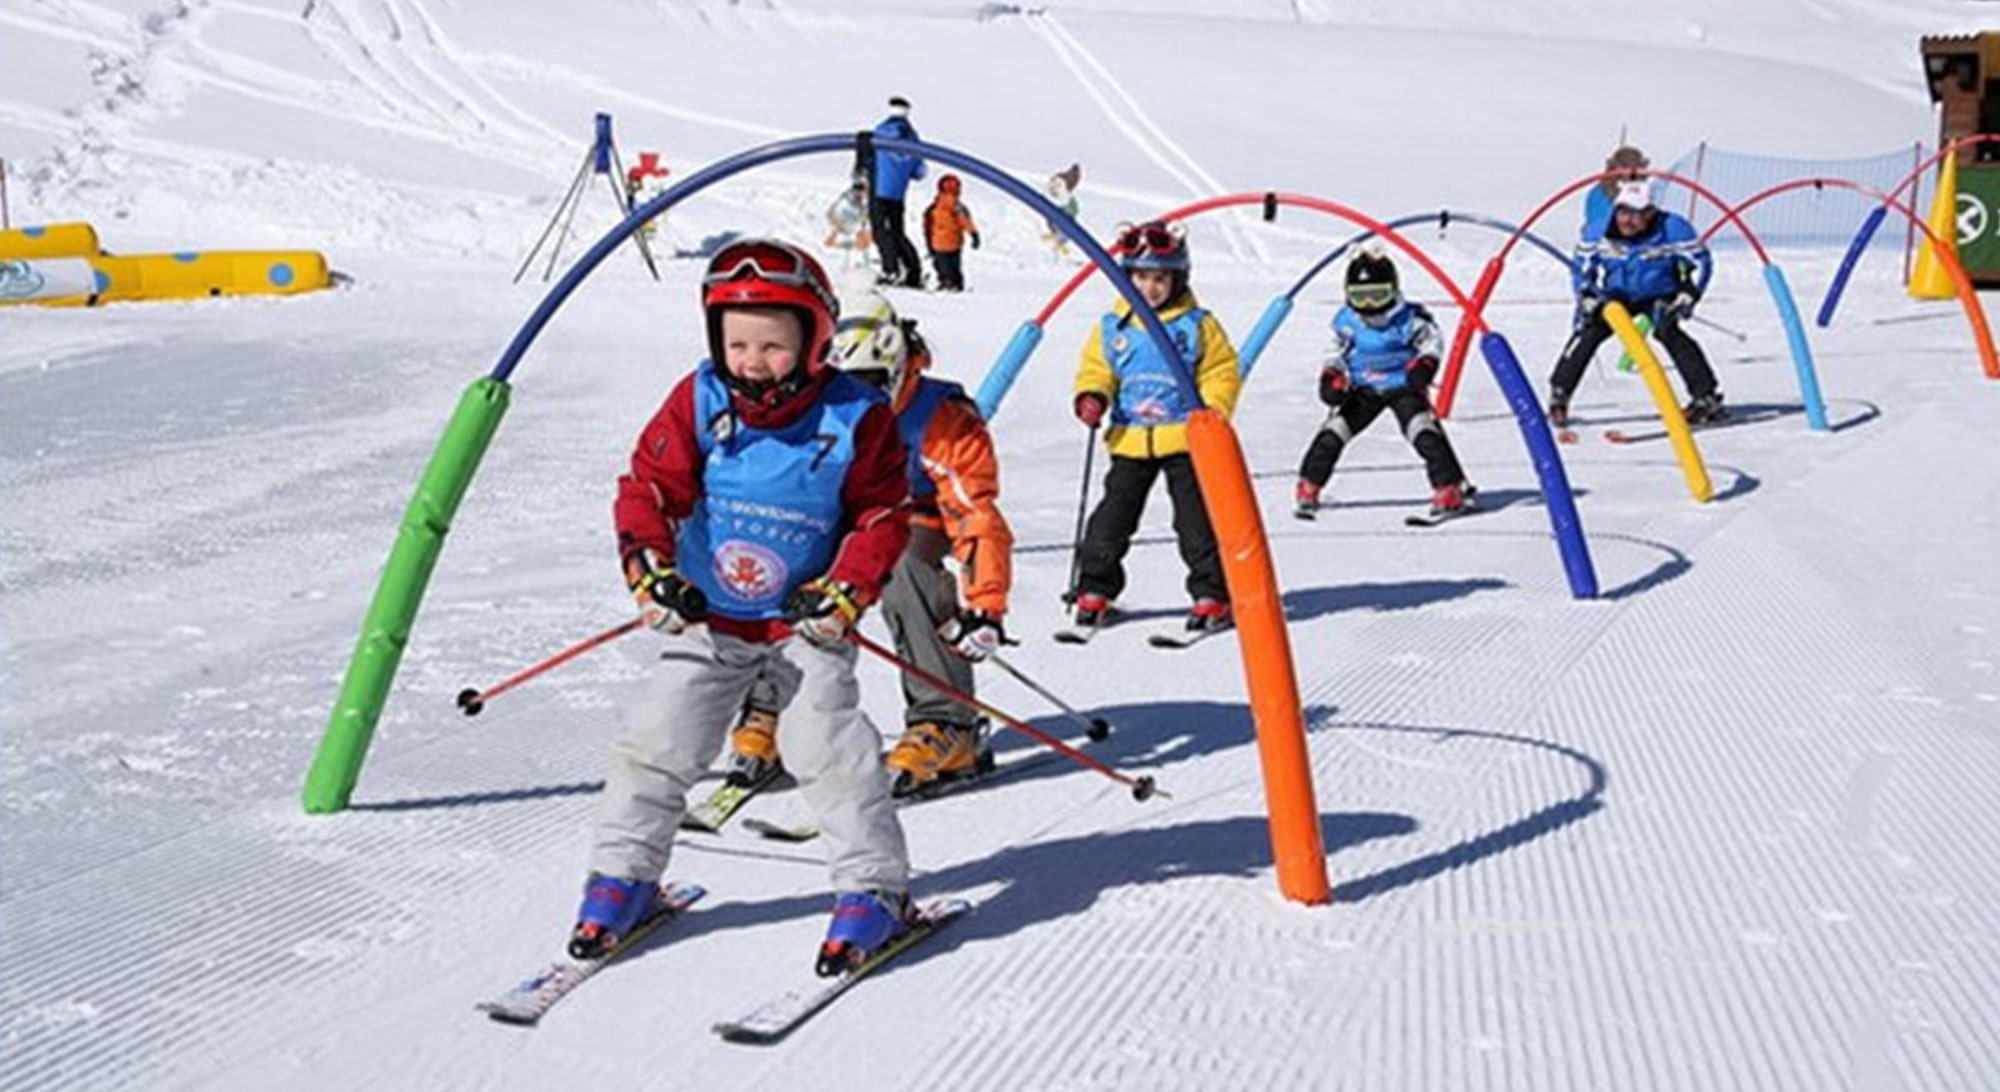 Хутор развлечение. Дети на горных лыжах. Горные лыжи красная Поляна.